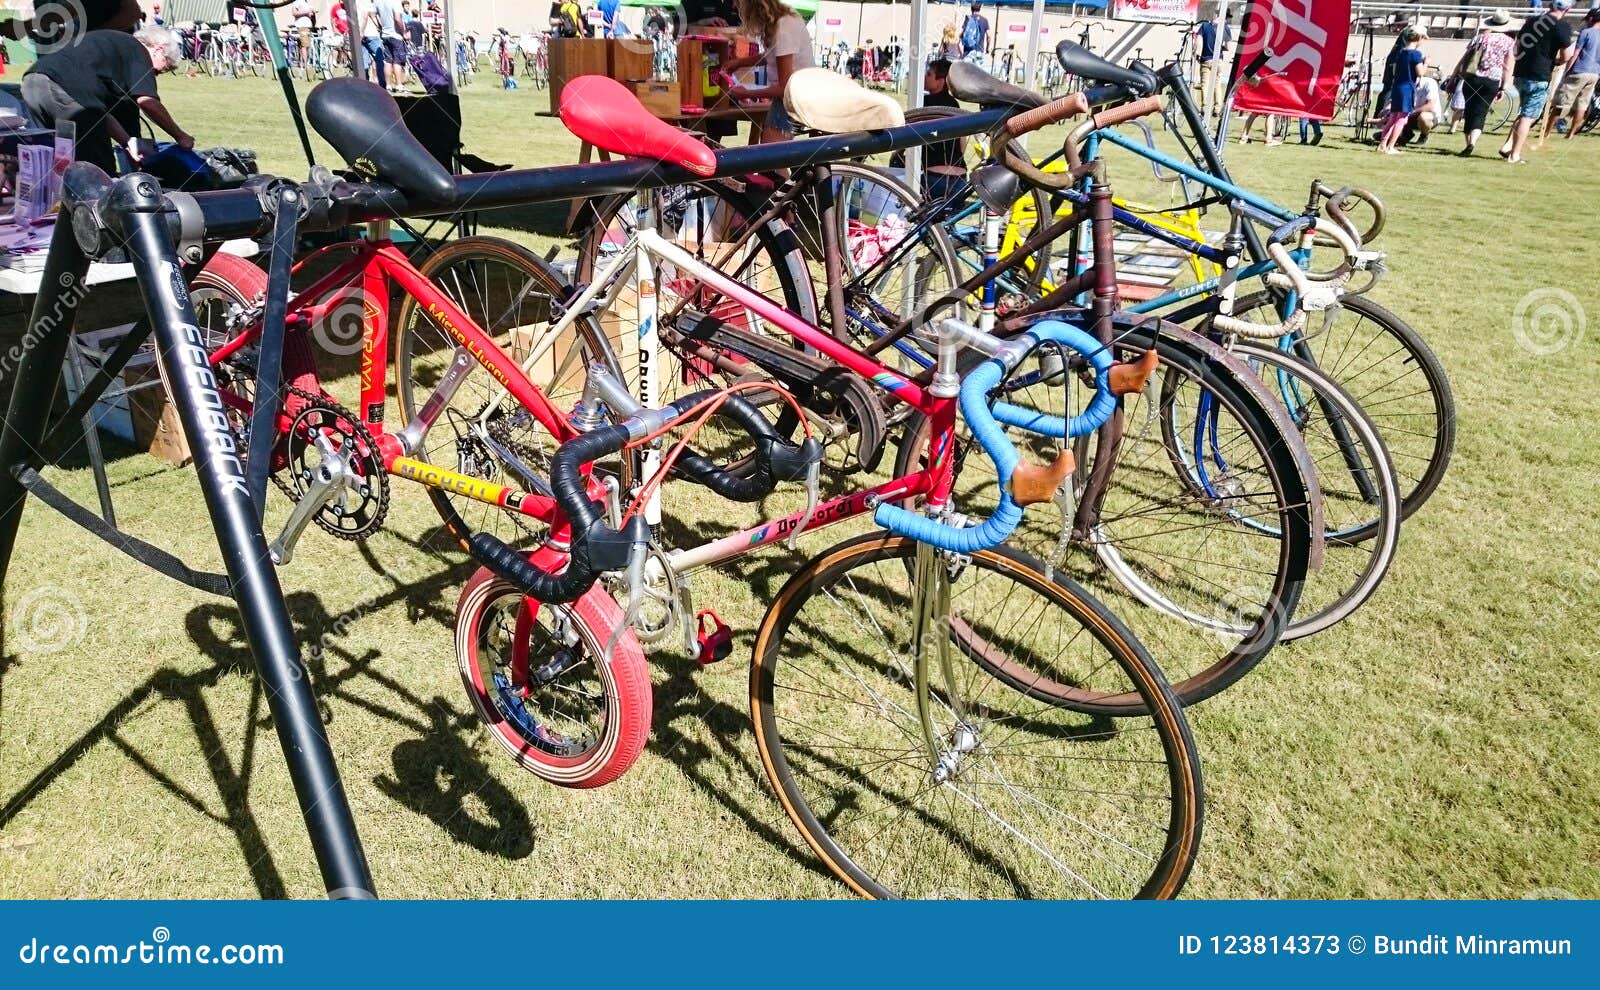 Τα μεταχειρισμένα ποδήλατα στο διαφορετικά μέγεθος και το εμπορικό σήμα για  την πώληση στο ποδηλατοδρόμιο του Καντέρμπουρυ στο ετ Εκδοτική Στοκ Εικόνες  - εικόνα από barfly, bicuspids: 123814373